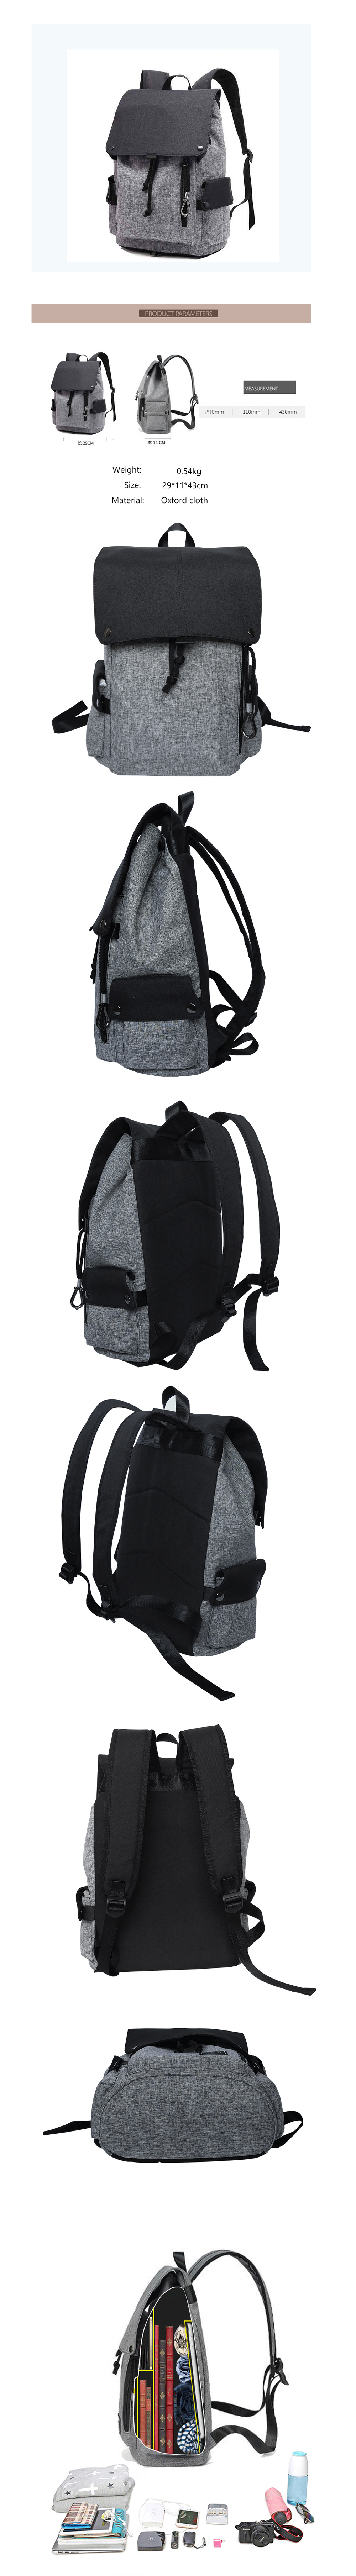 Student Bag Canvas Travel Backpack Leisure Computer Bag Shoulder Bag